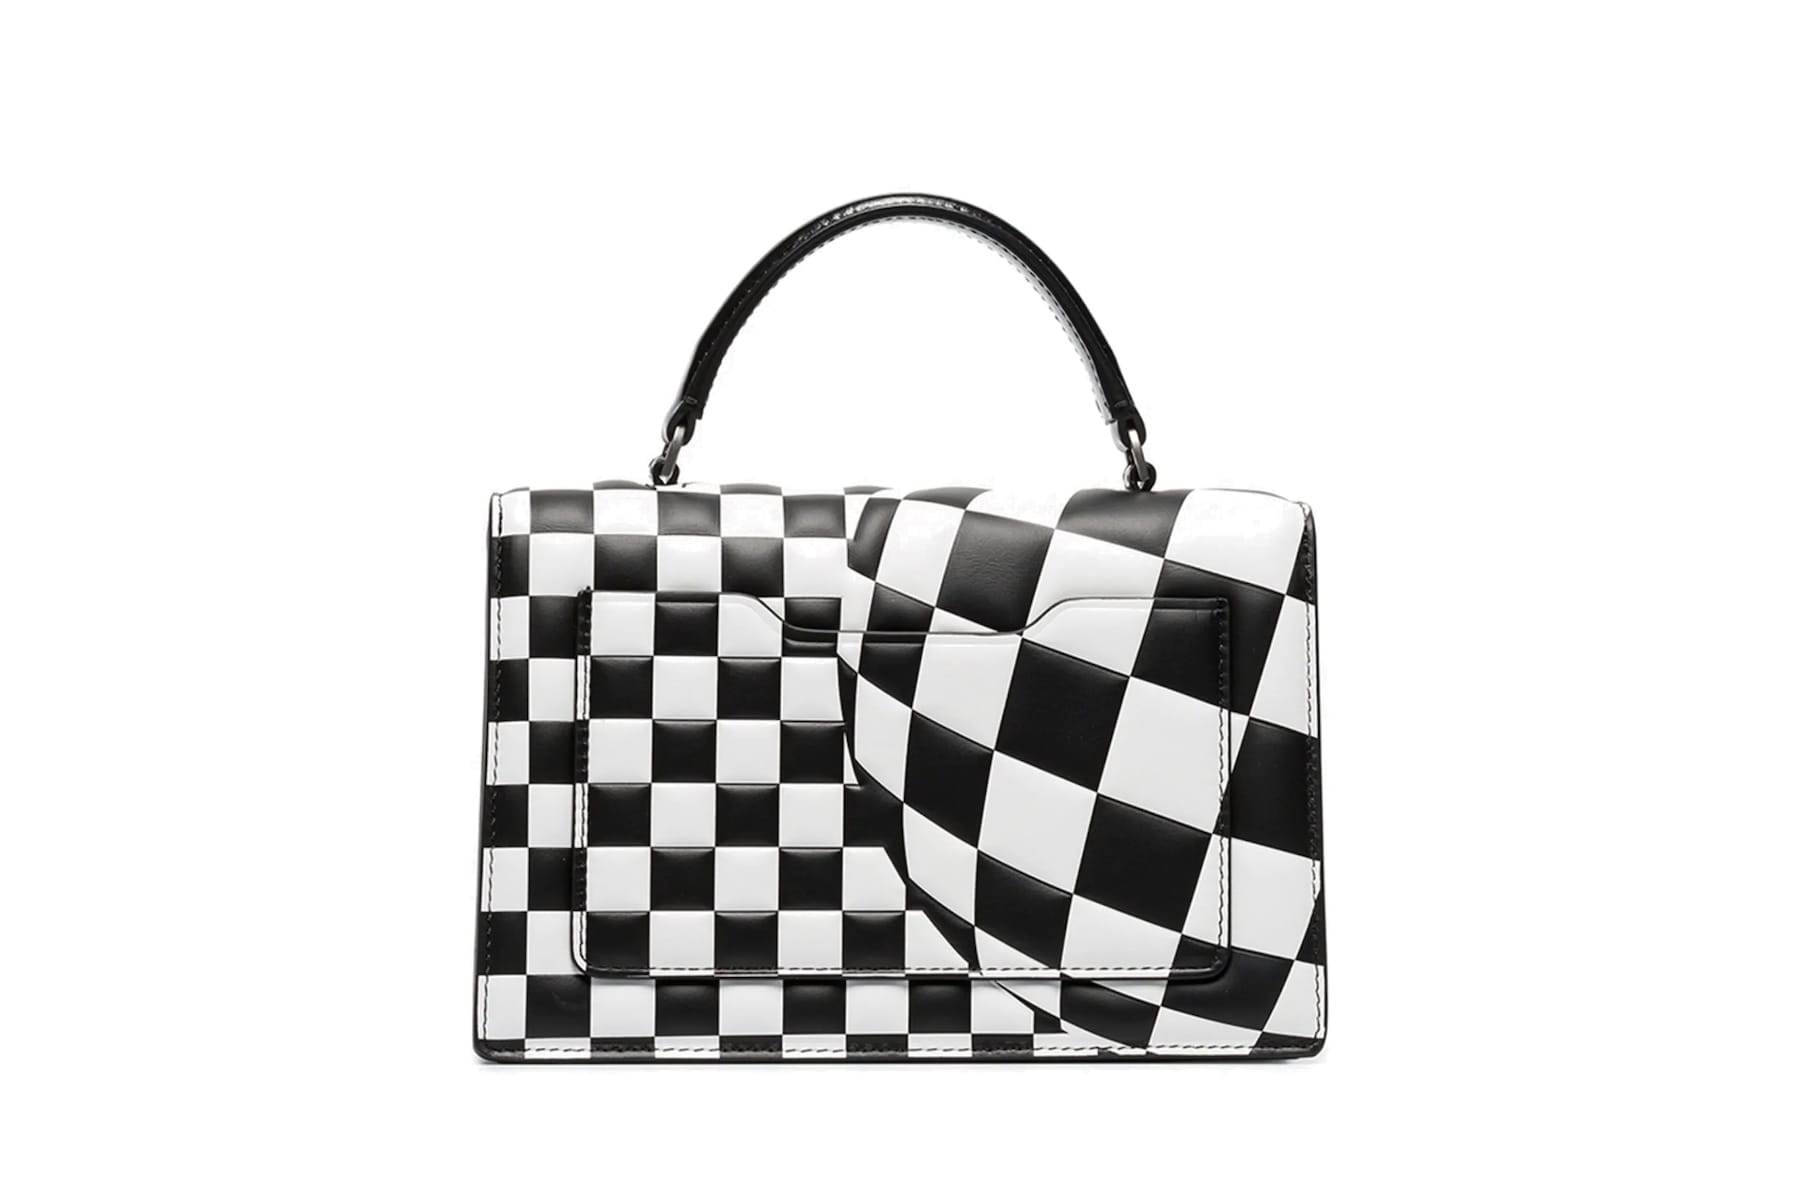 Buy Black & White Handbags for Women by STEVE MADDEN Online | Ajio.com